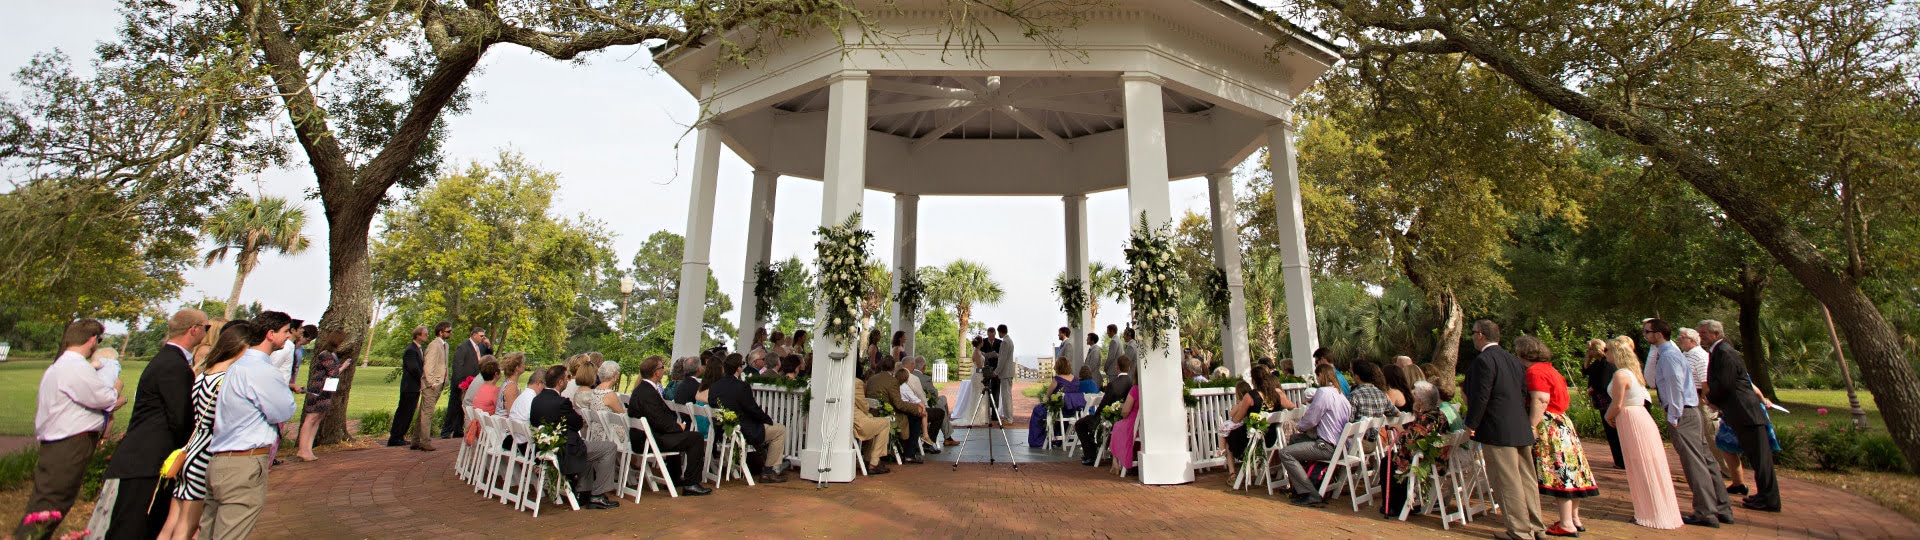 Park Weddings in Apalachicola Florida